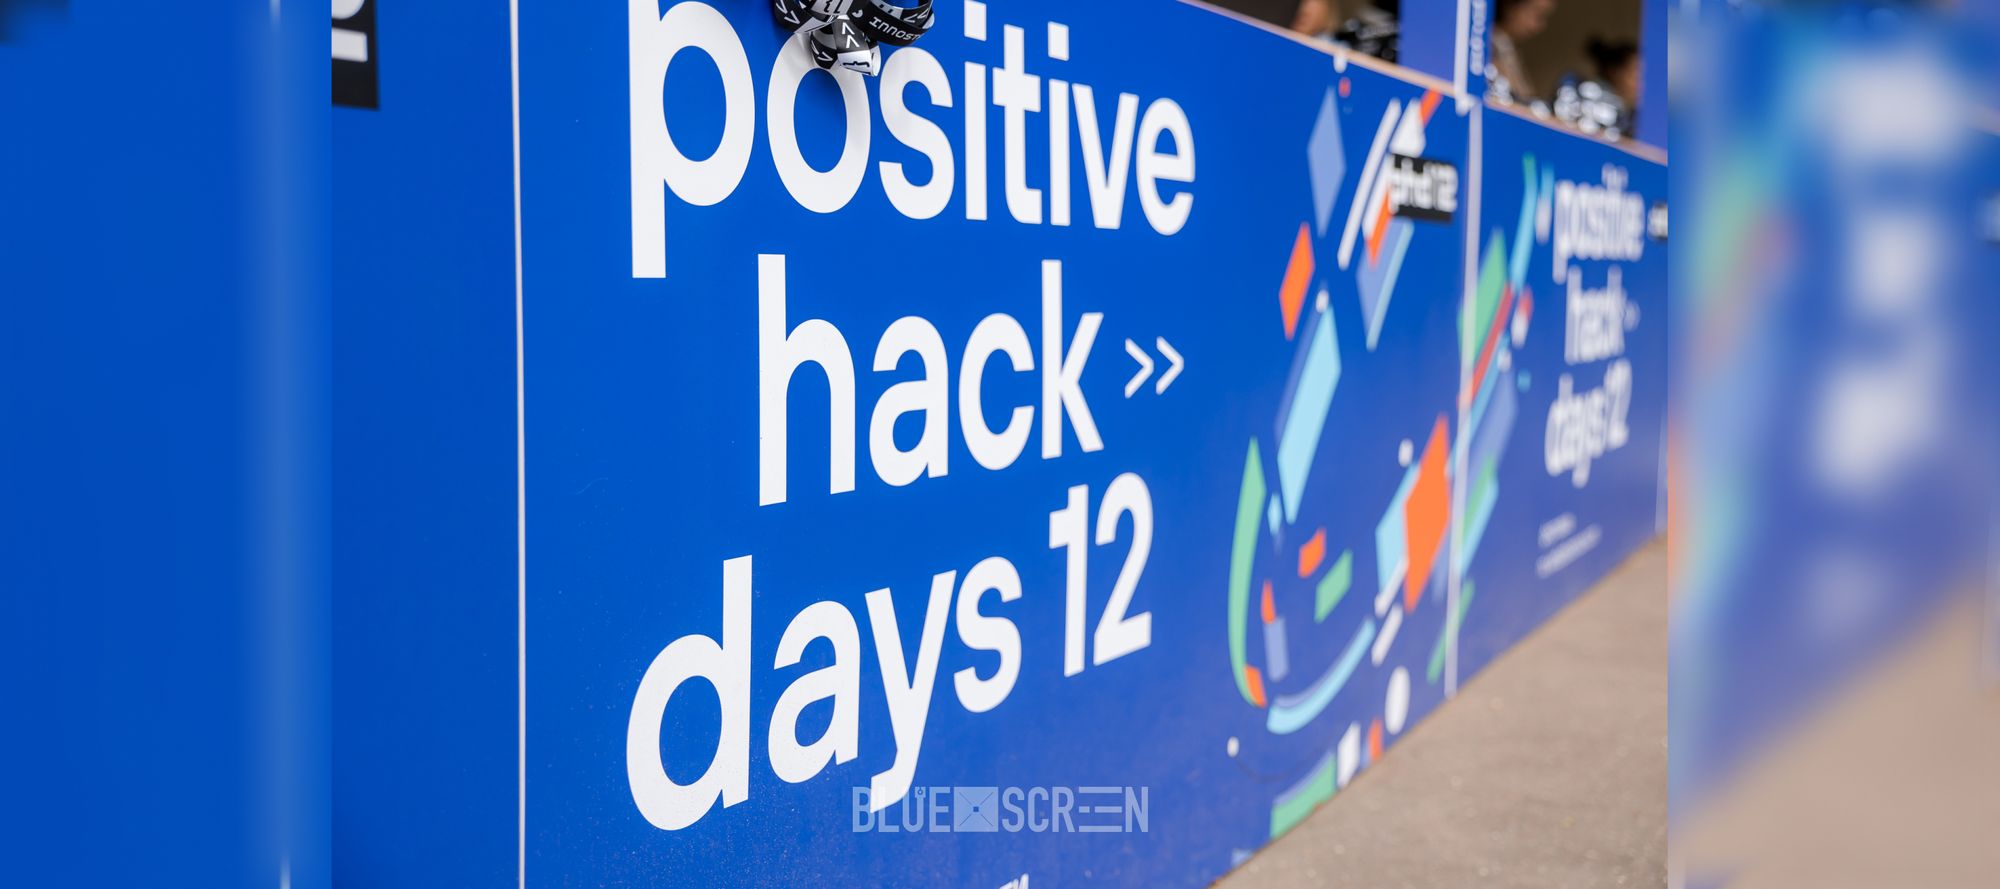 Итоги киберфестиваля Positive Hack Days 12